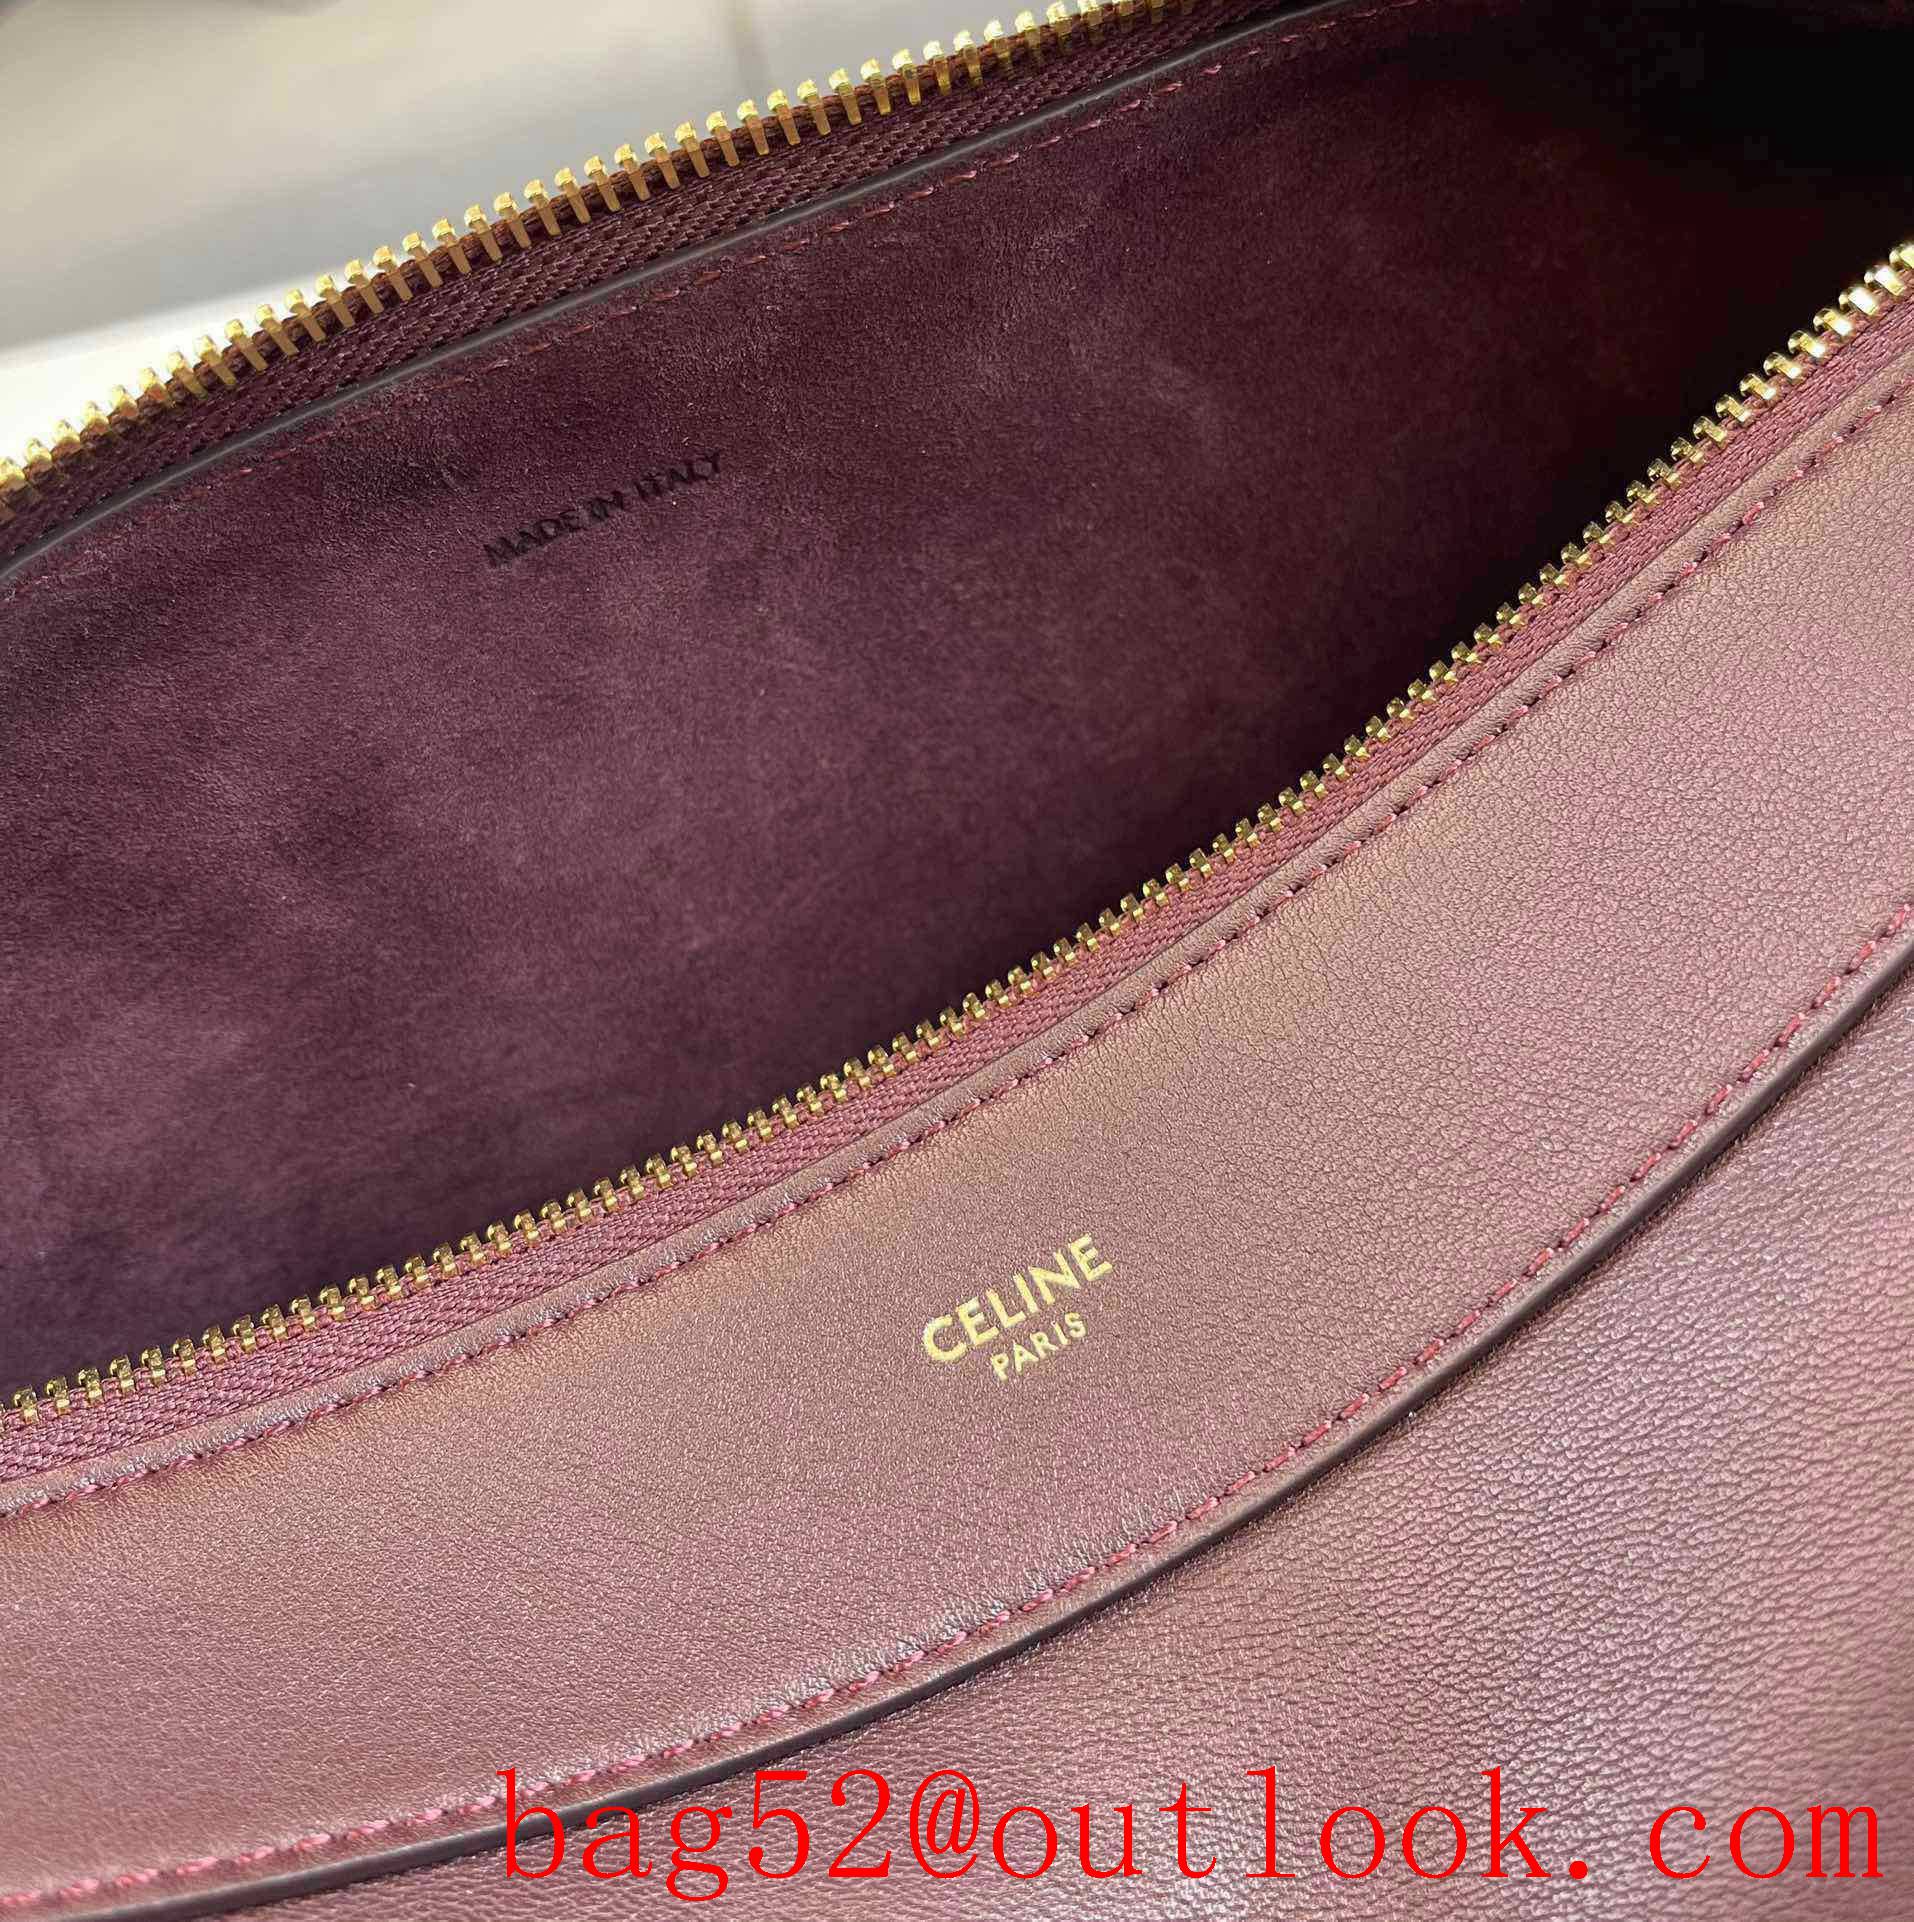 Celine romy medium soft calfskin handbag brown leather lining shoulder bag